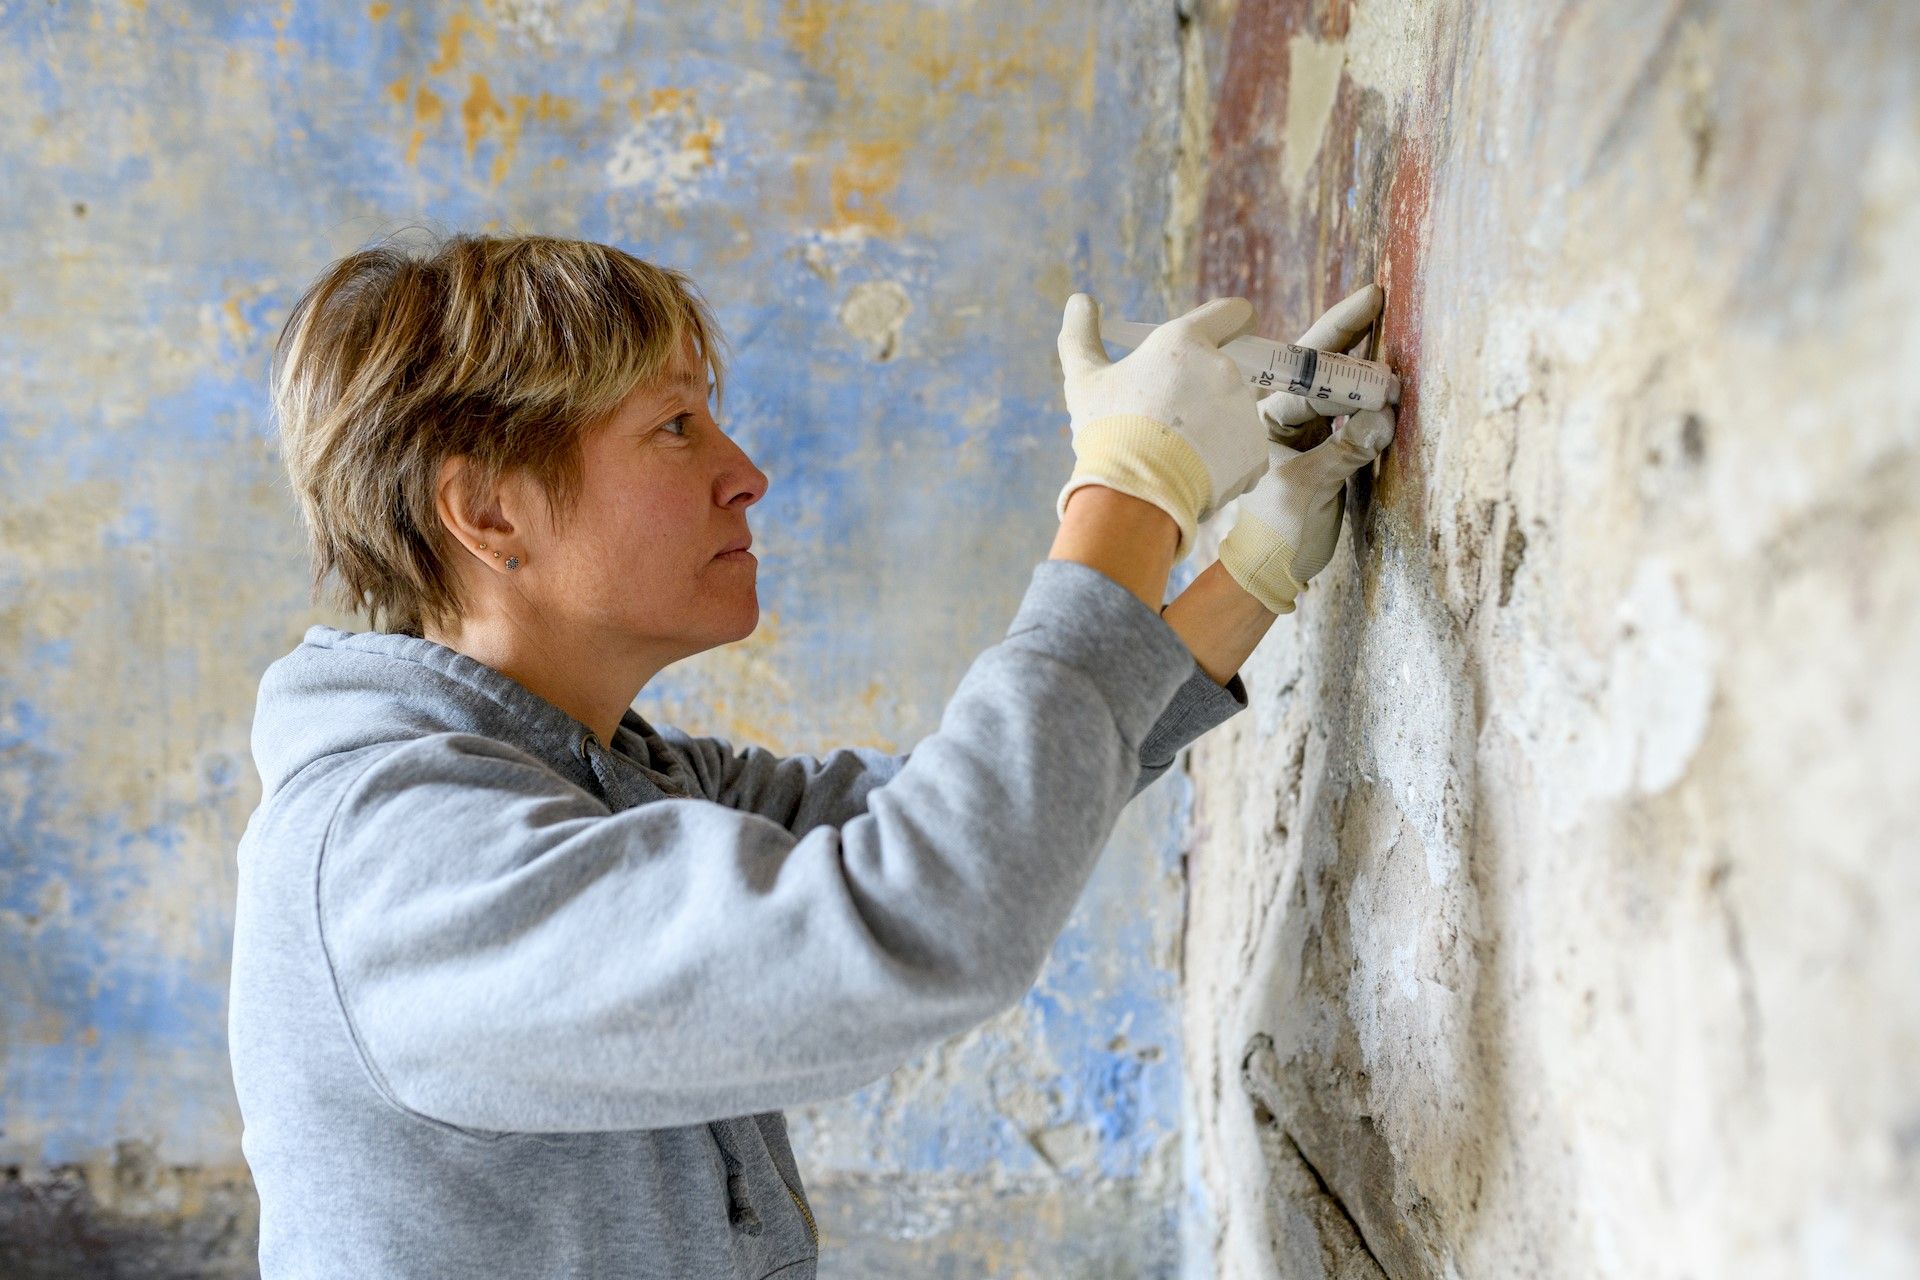 restauratrice donna durane lavoro di restauro chiesa in cantiere general contractor Dom-us Teramo Abruzzo